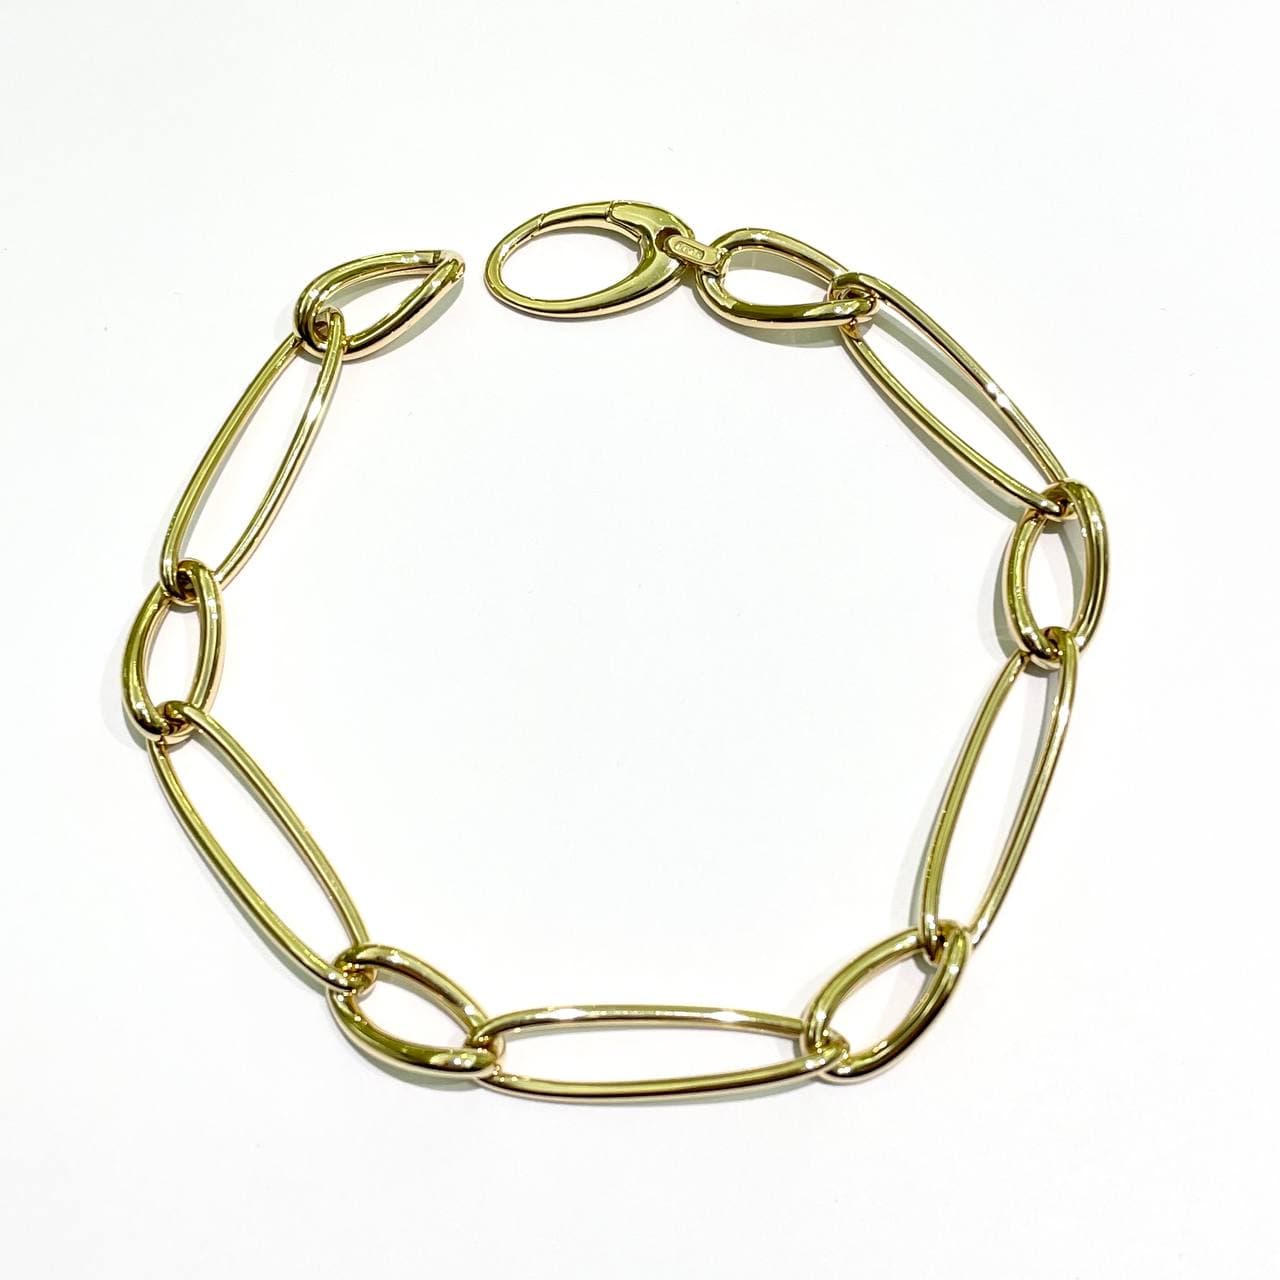 Bracciale in oro giallo 18kt con maglia a catena con anelli piccoli e grandi.  Lunghezza 20 cm, con possibilità di chiuderlo in ogni maglia.  Larghezza 0,5 cm.